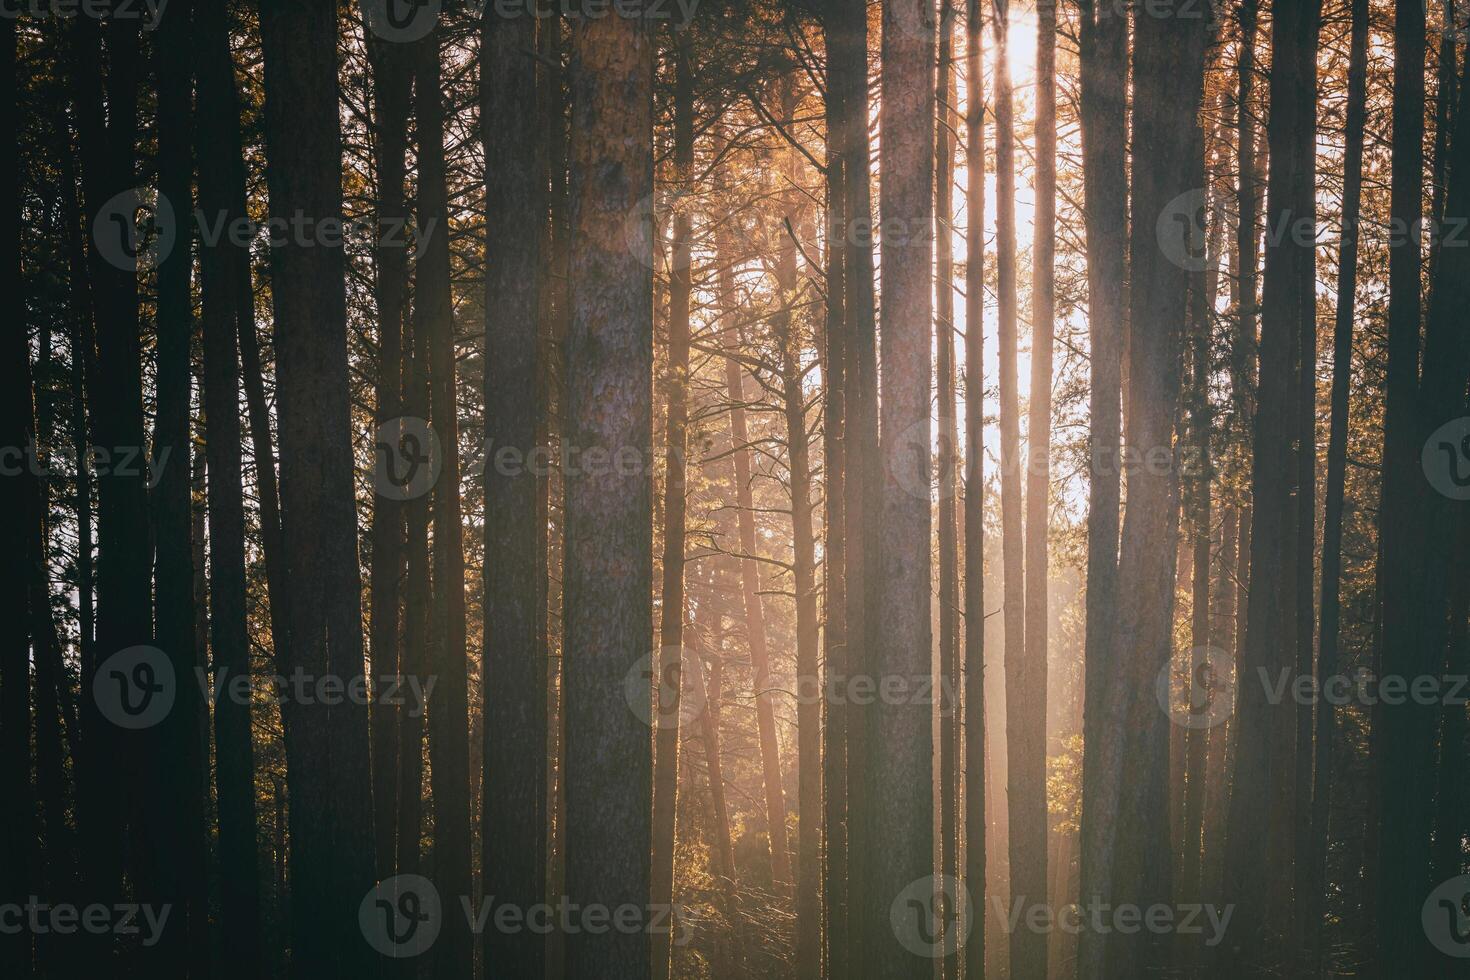 Sonnenstrahlen leuchten das Stämme von Kiefer Bäume beim Sonnenuntergang oder Sonnenaufgang im ein früh Winter Kiefer Wald. Ästhetik von Jahrgang Film. foto